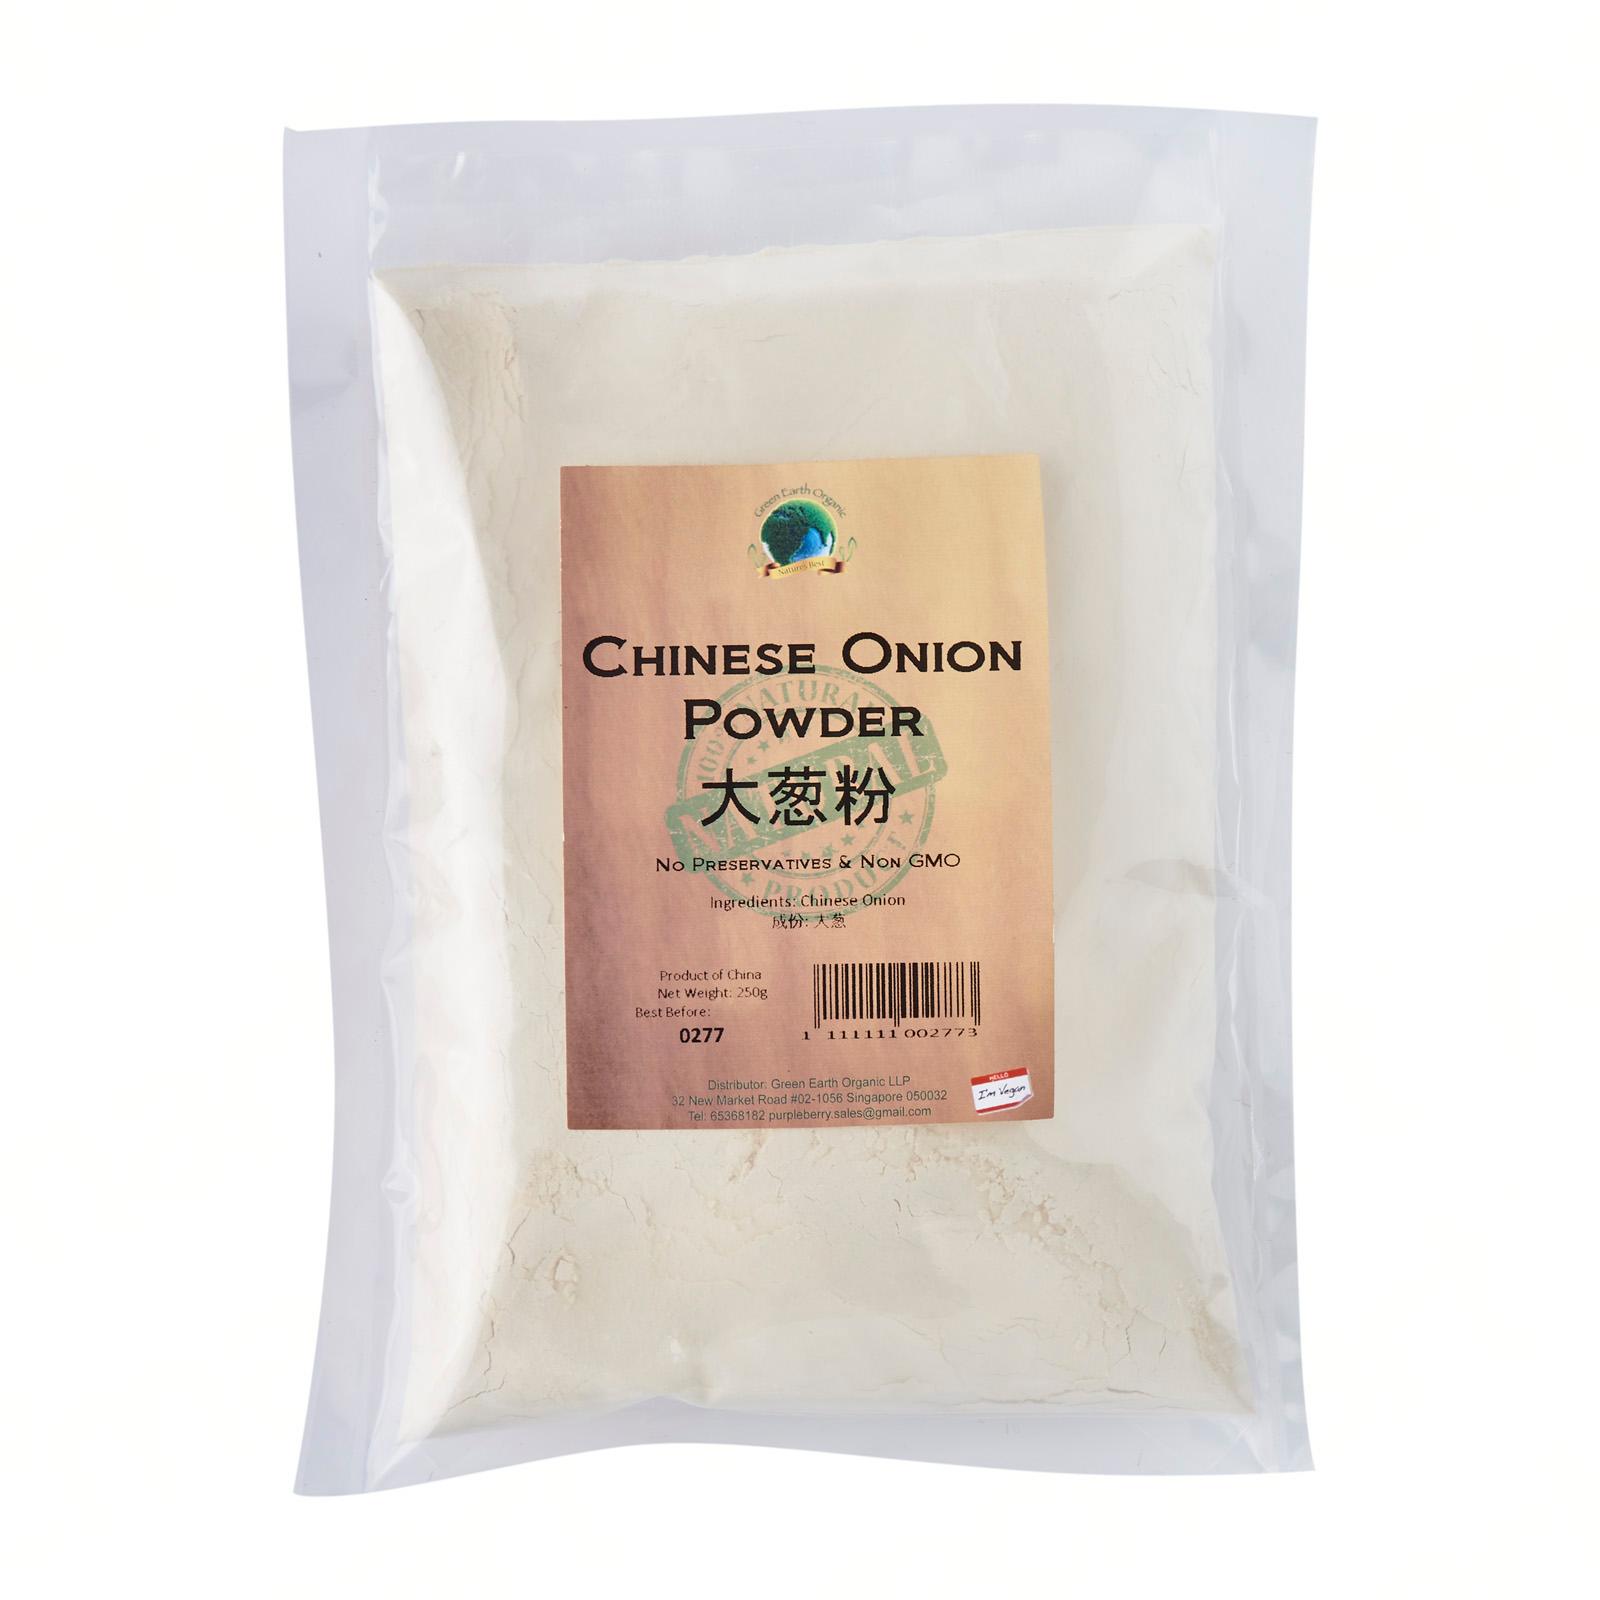 Chinese Onion Powder